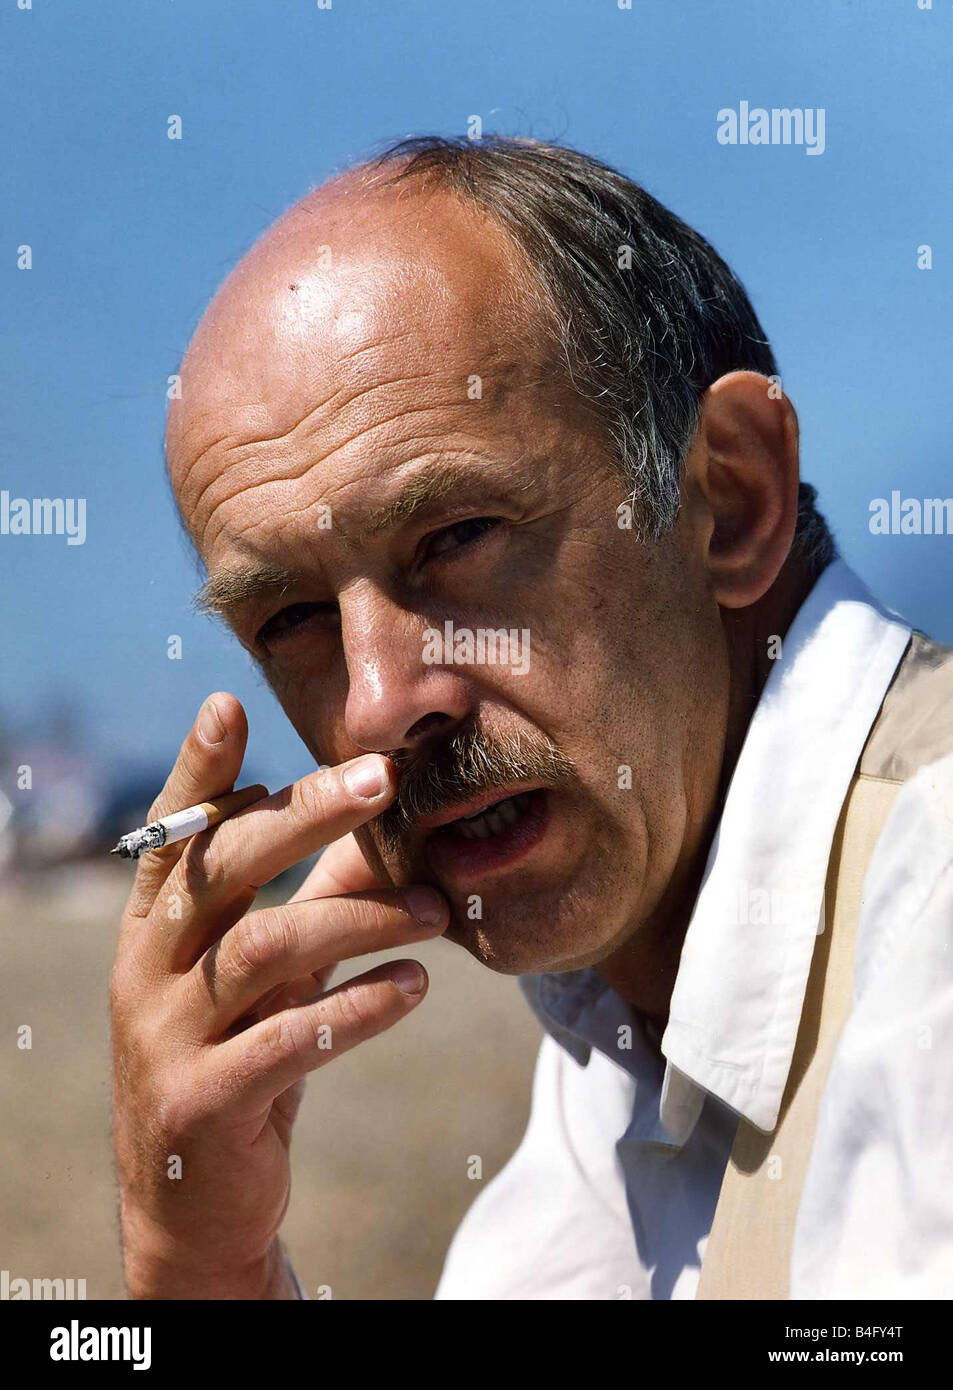 Roy Marsden actor smoking a cigarette Mirrorpix Stock Photo